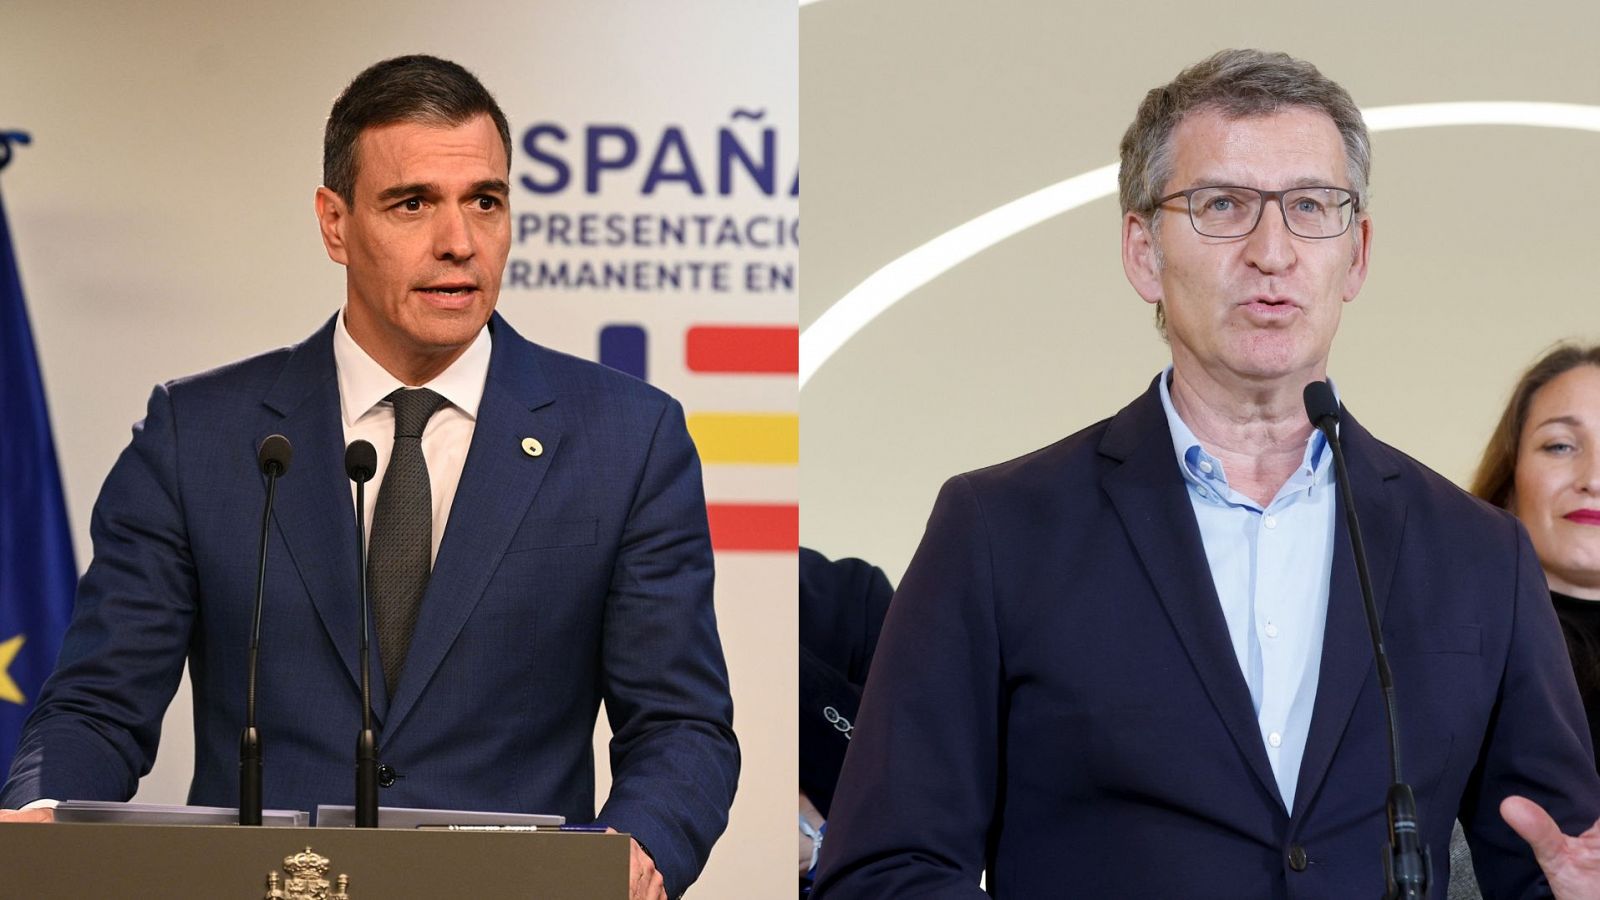 Elecciones vascas | La campaña marca la política nacional